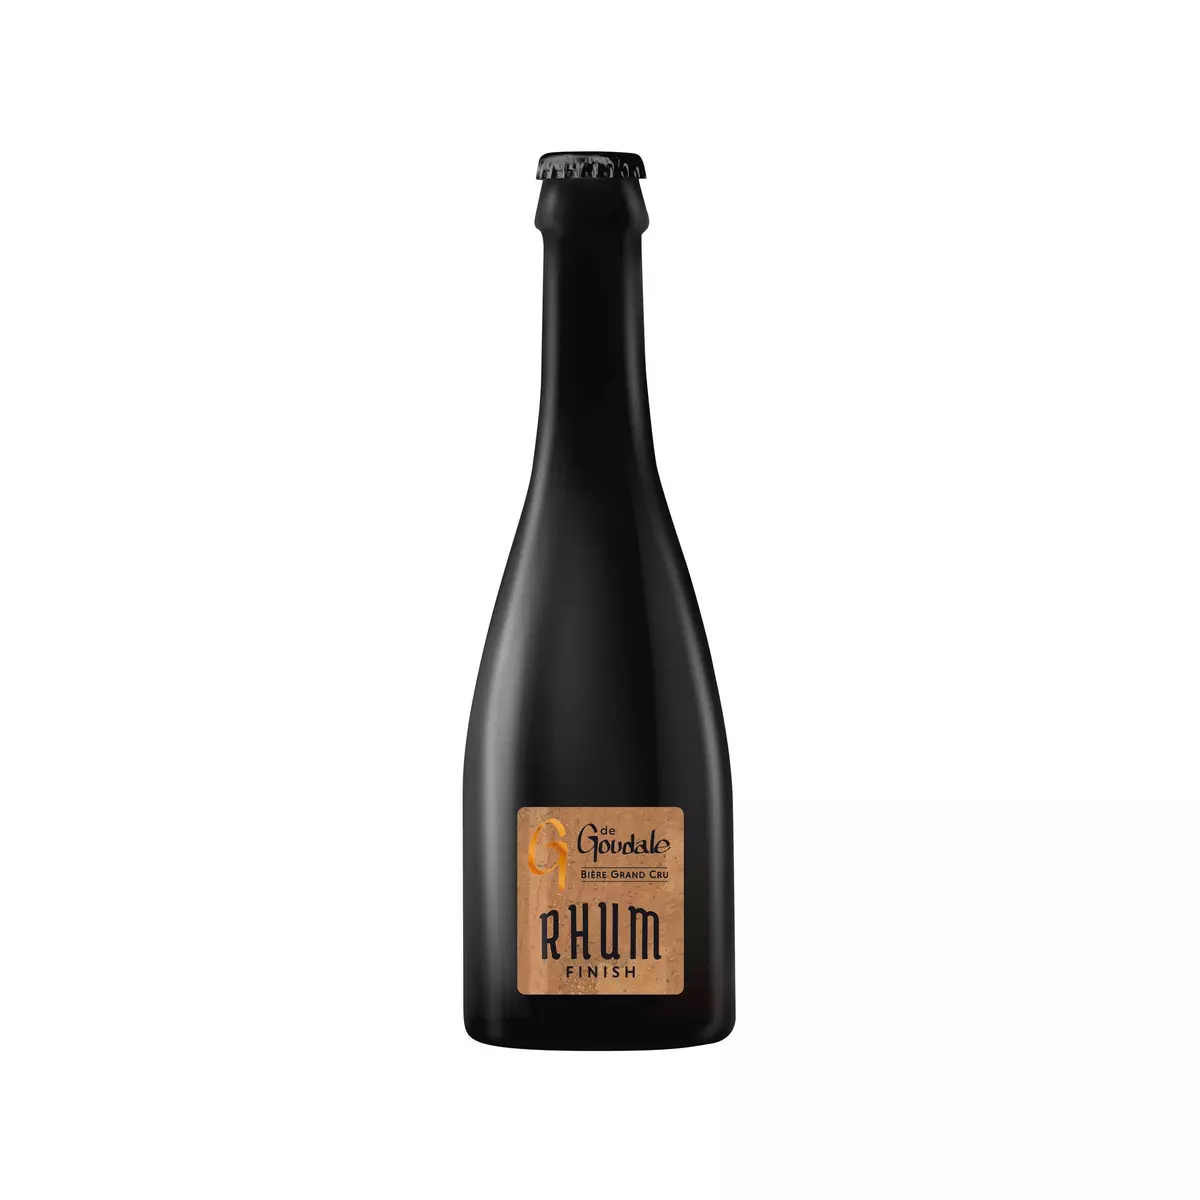 LA GOUDALE Bière grand cru rhum finish 7.9% 33cl